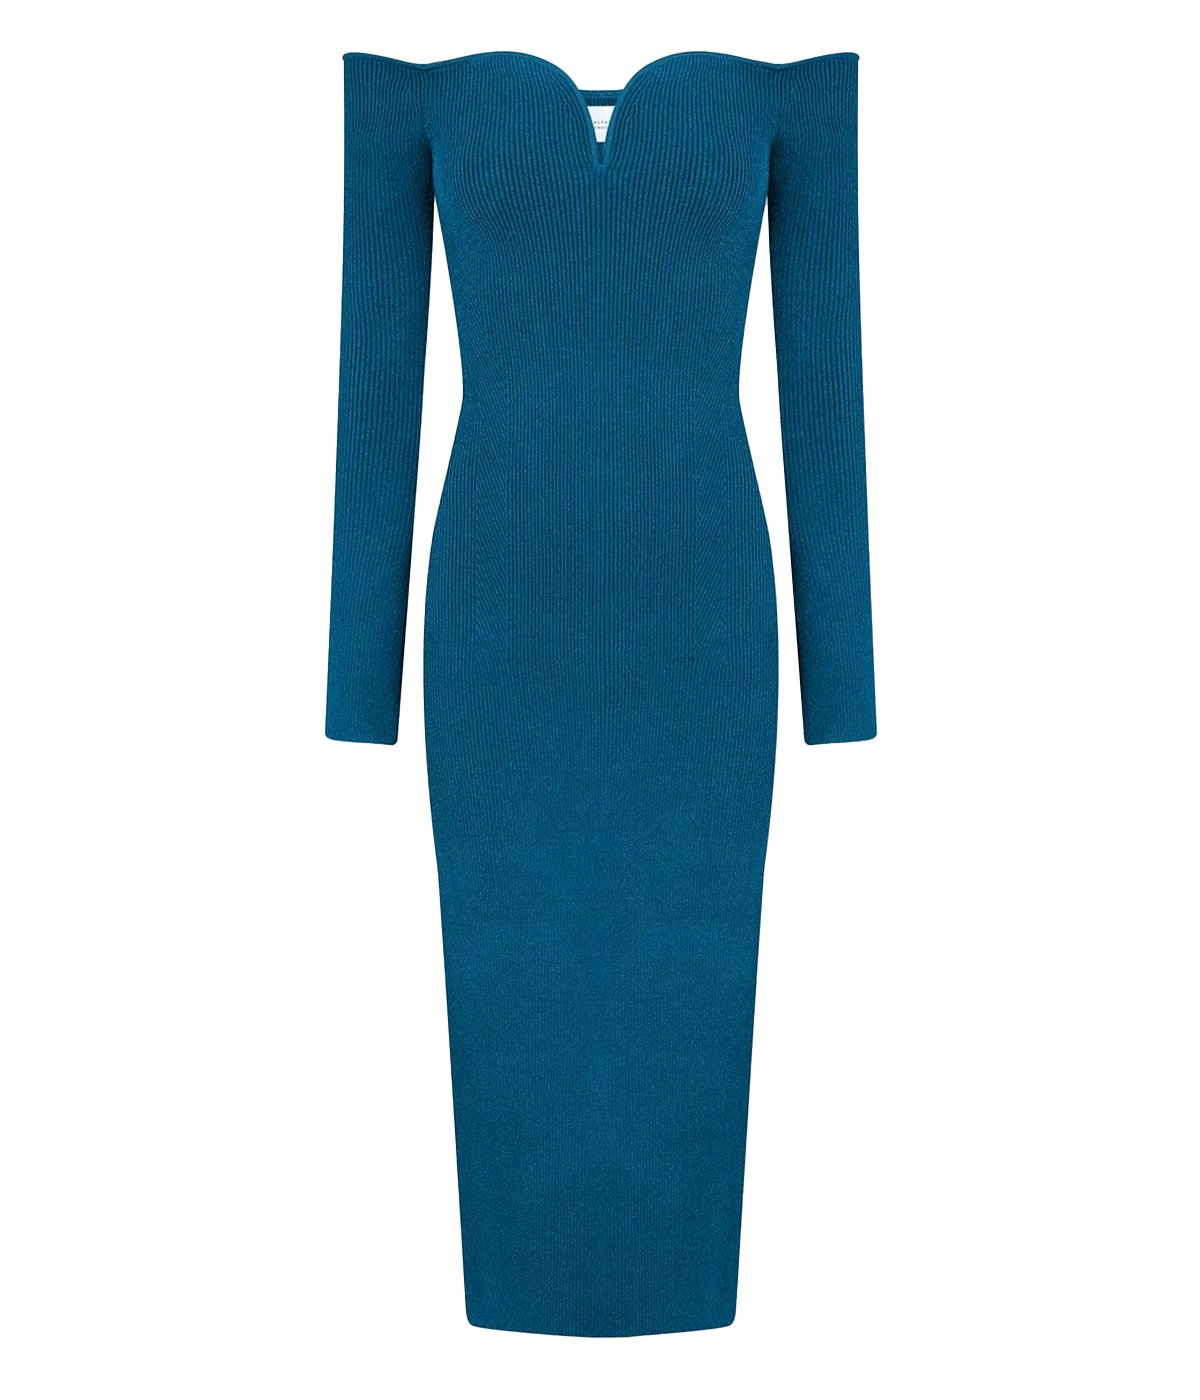 Grace Long Sleeve Dress in Peacock